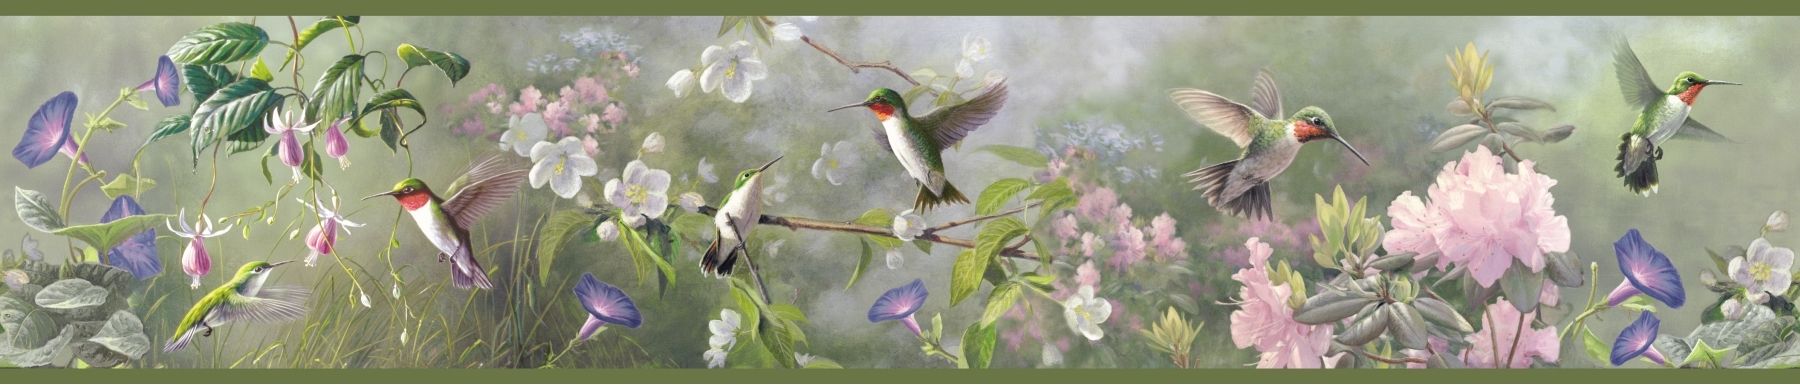 Hummingbird Wallpaper Border Grasscloth